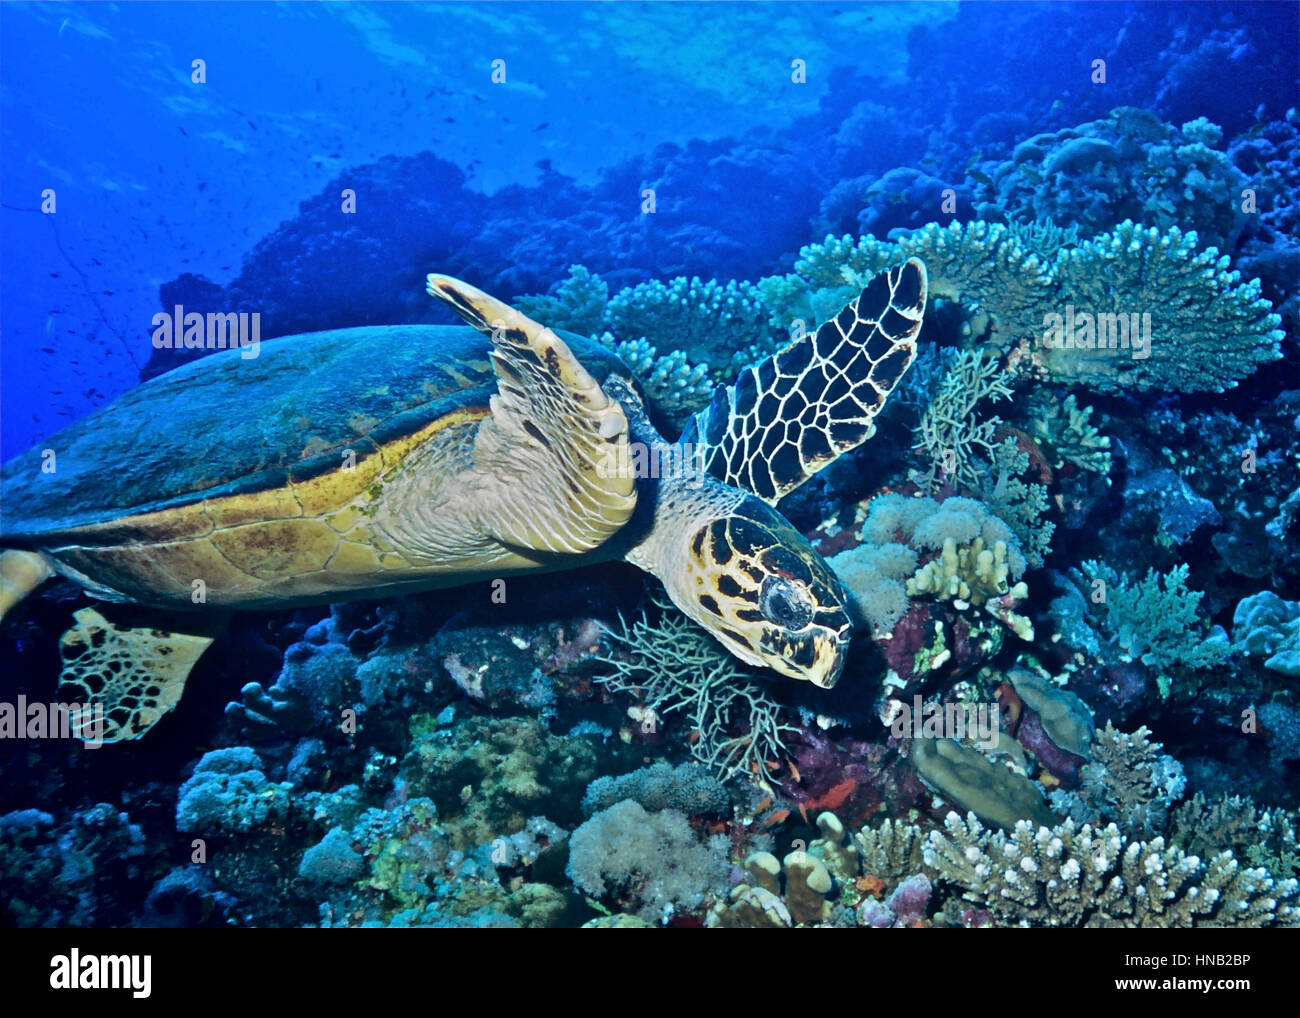 Eine Karettschildkröte (Eretmochelys Imbricata) unter Korallen. Die IUCN Rote Liste zeigt, dass diese Spezies vom Aussterben bedroht ist. Ägyptischen Roten Meer. Stockfoto